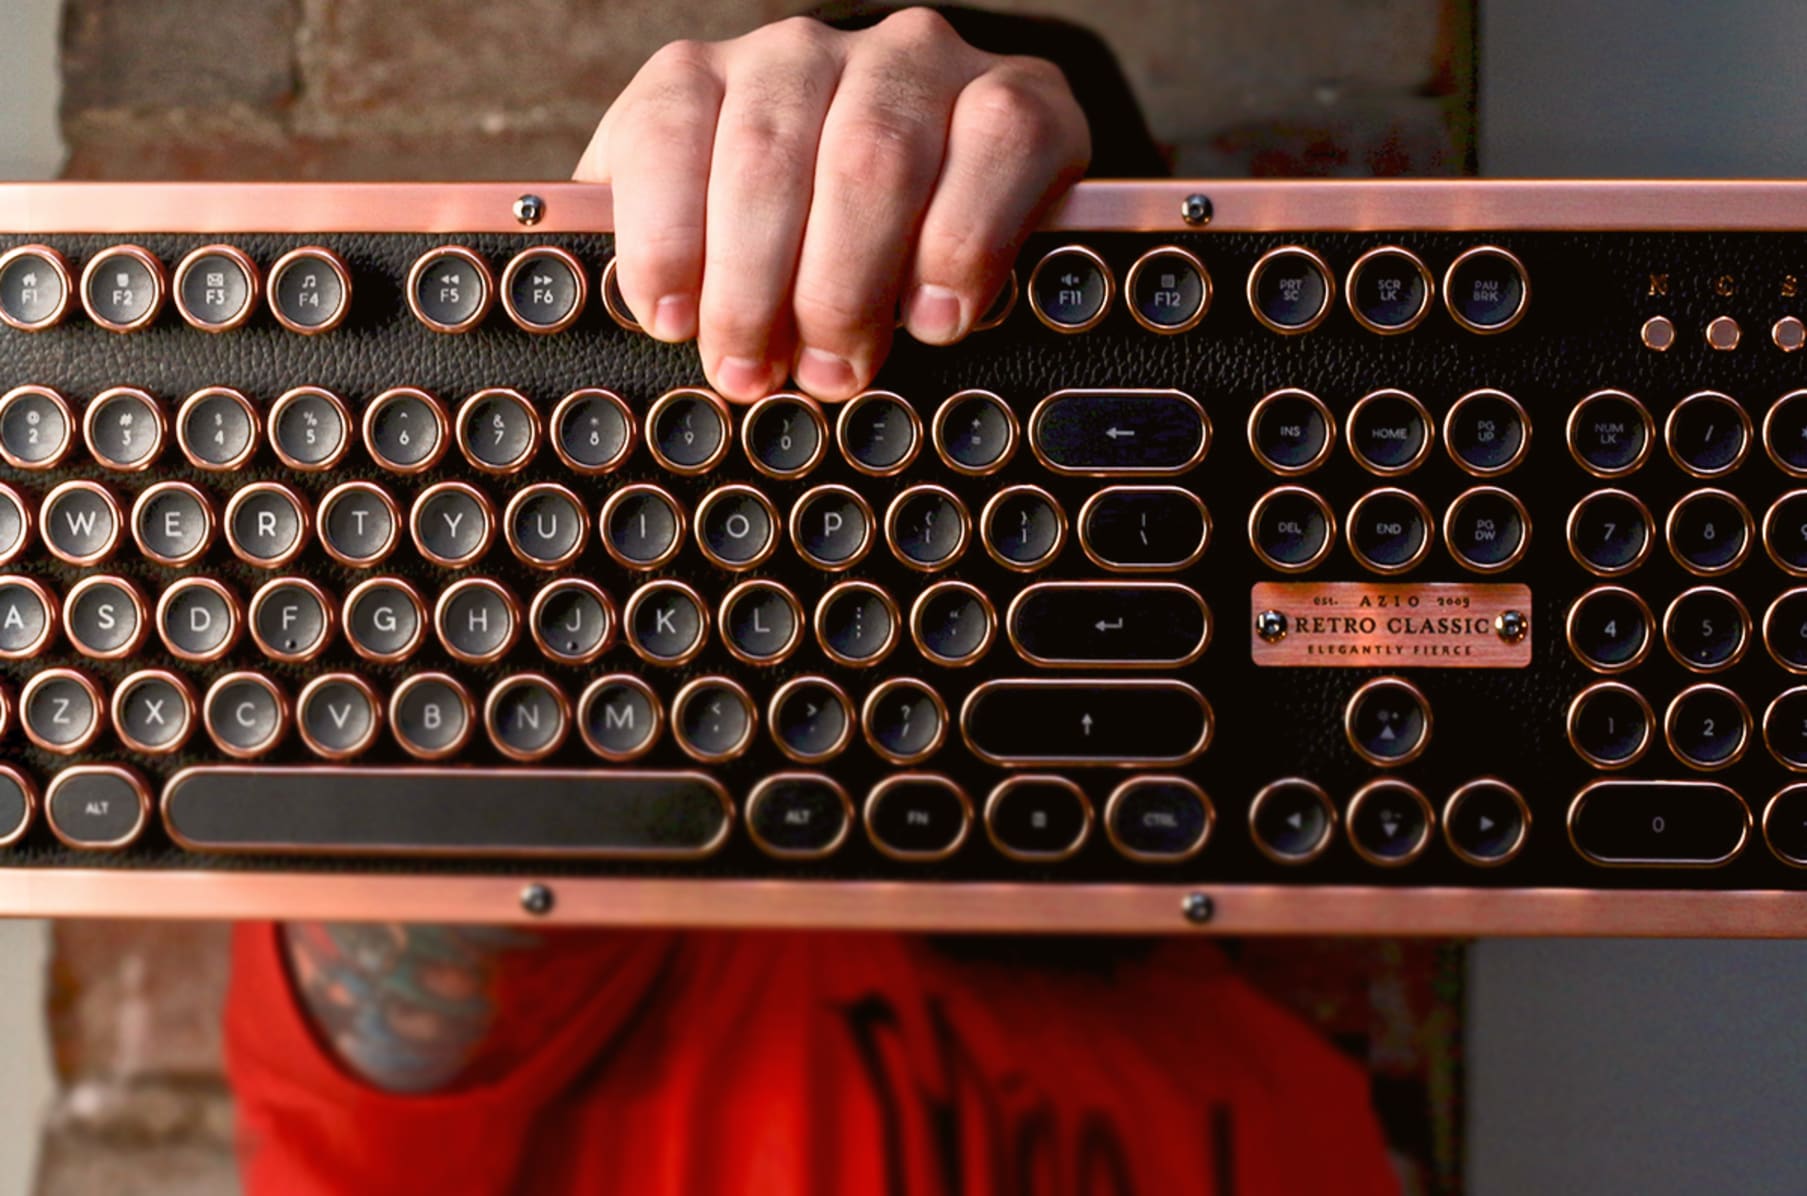 Azio Industry First Luxury Vintage Keyboard | Indiegogo